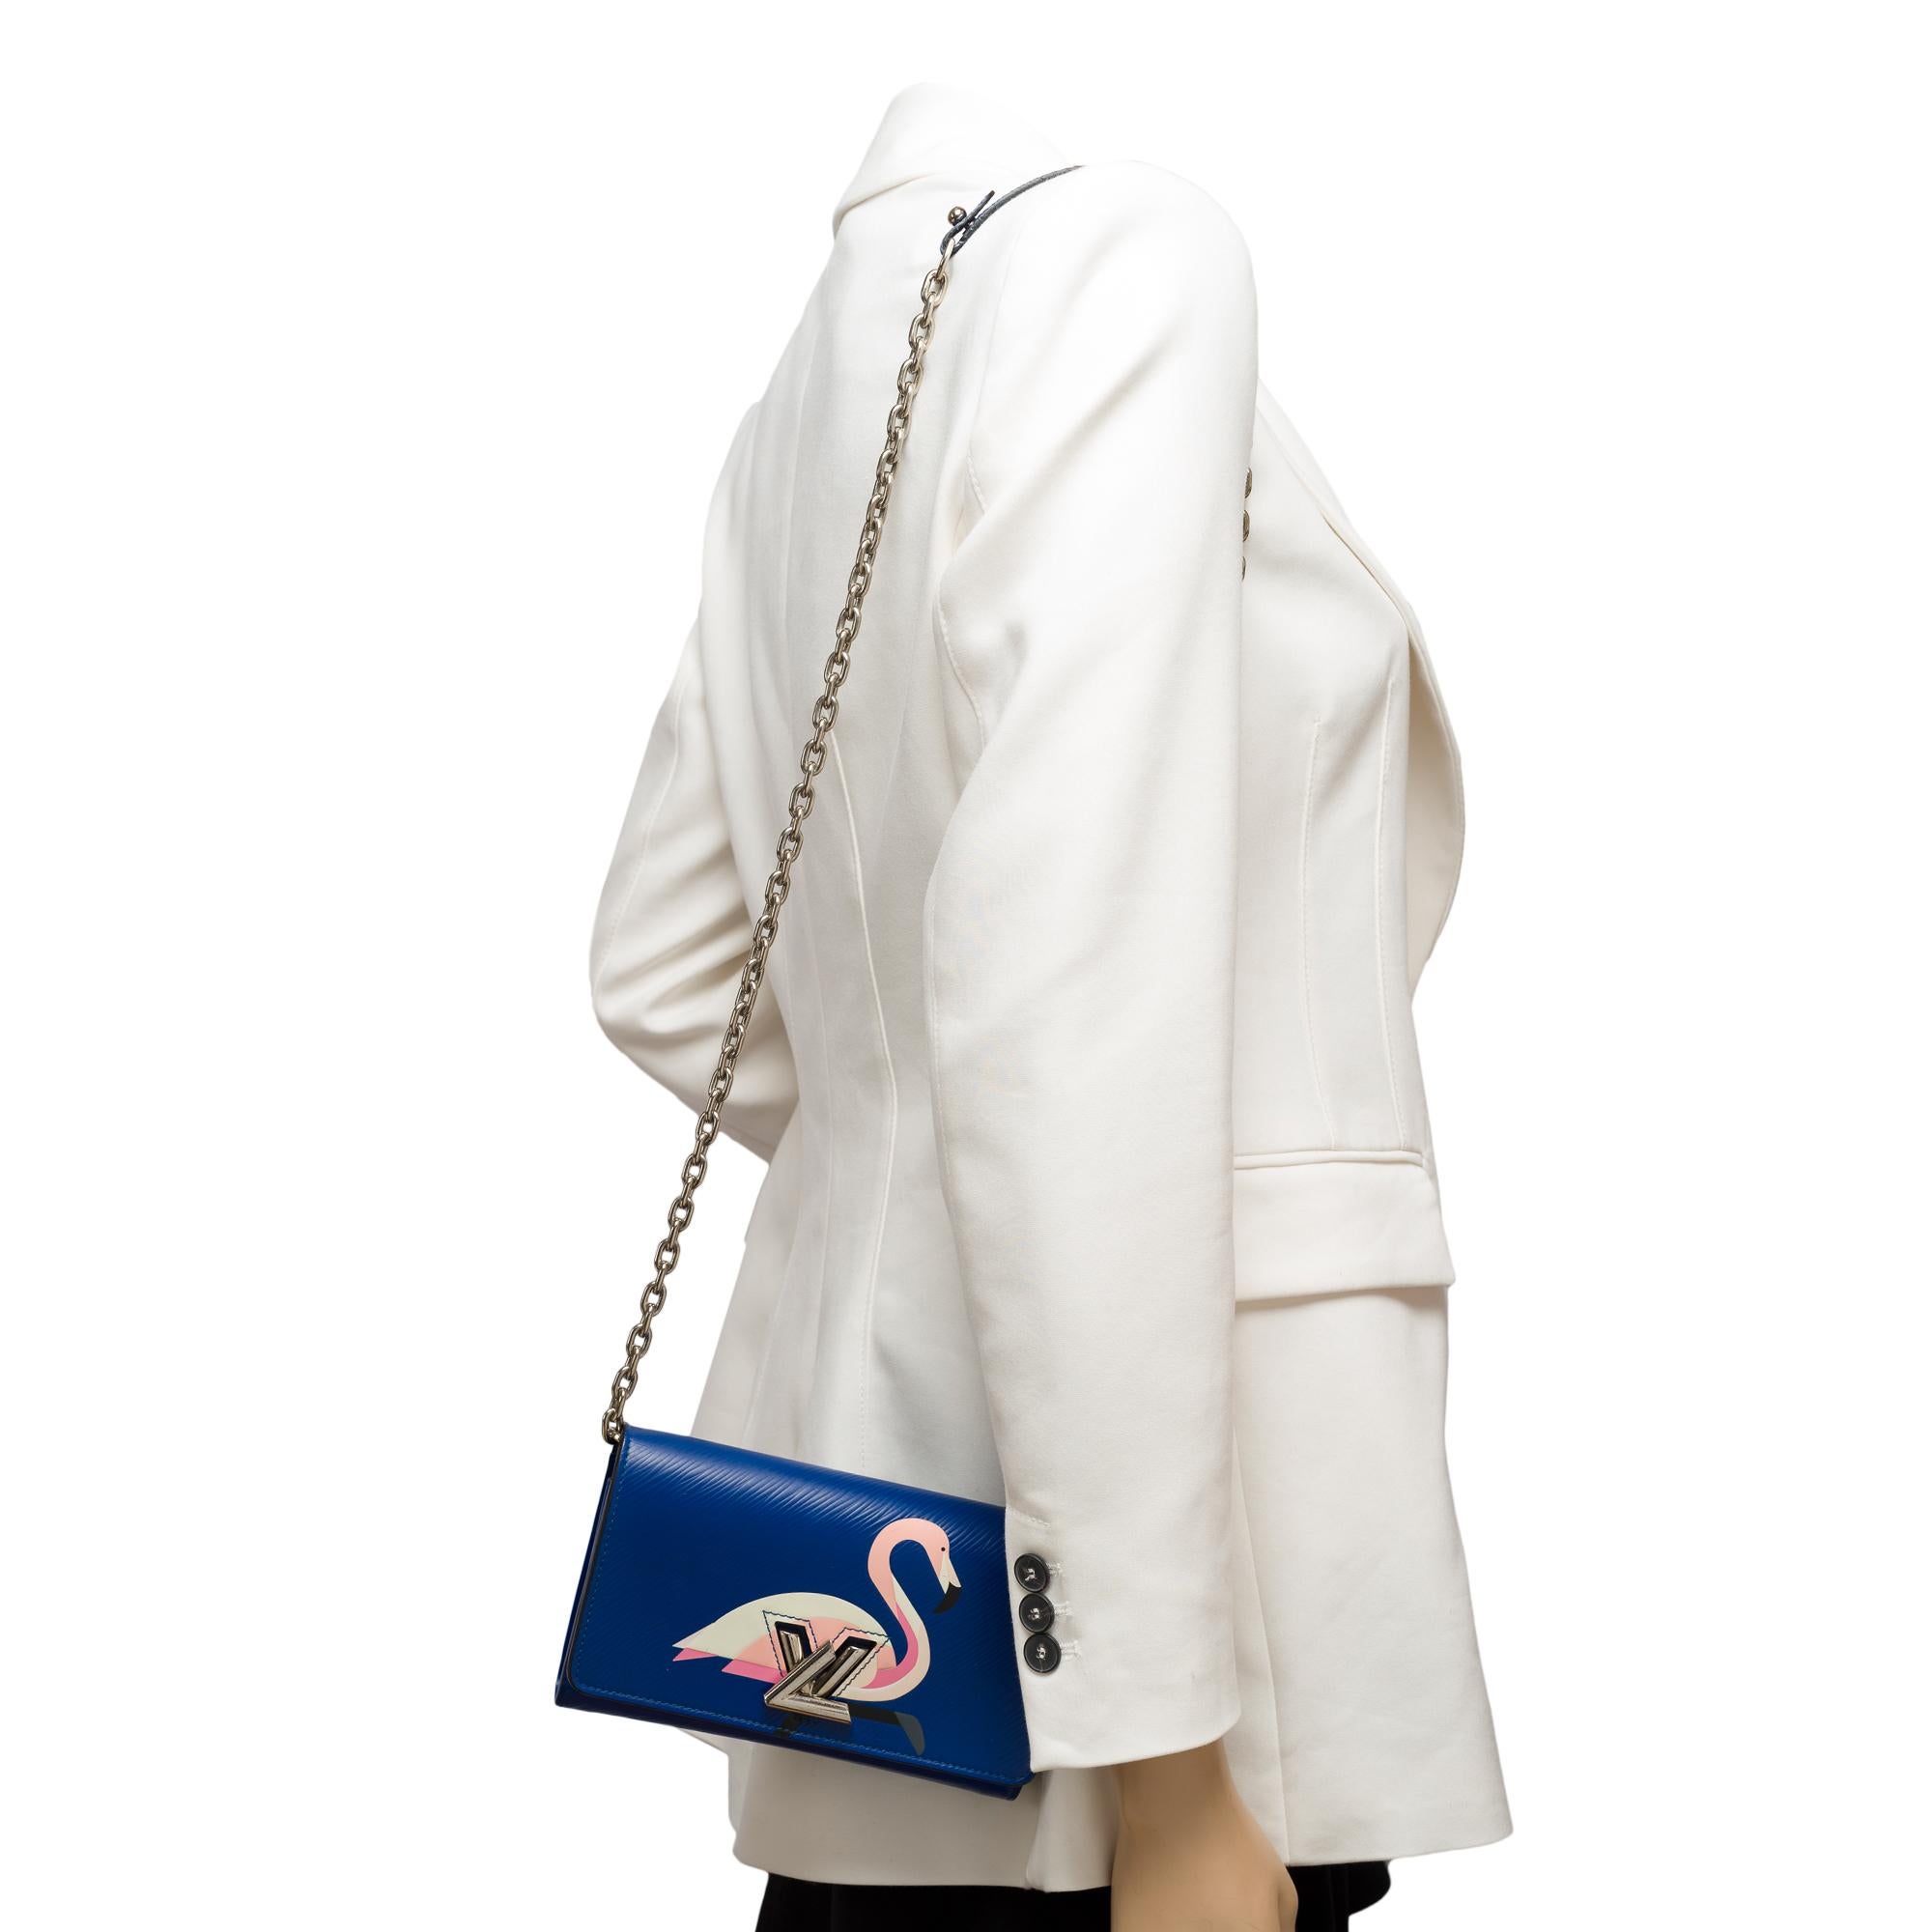 Flamingo Louis Vuitton Twist shoulder bag in blue epi leather, SHW 8